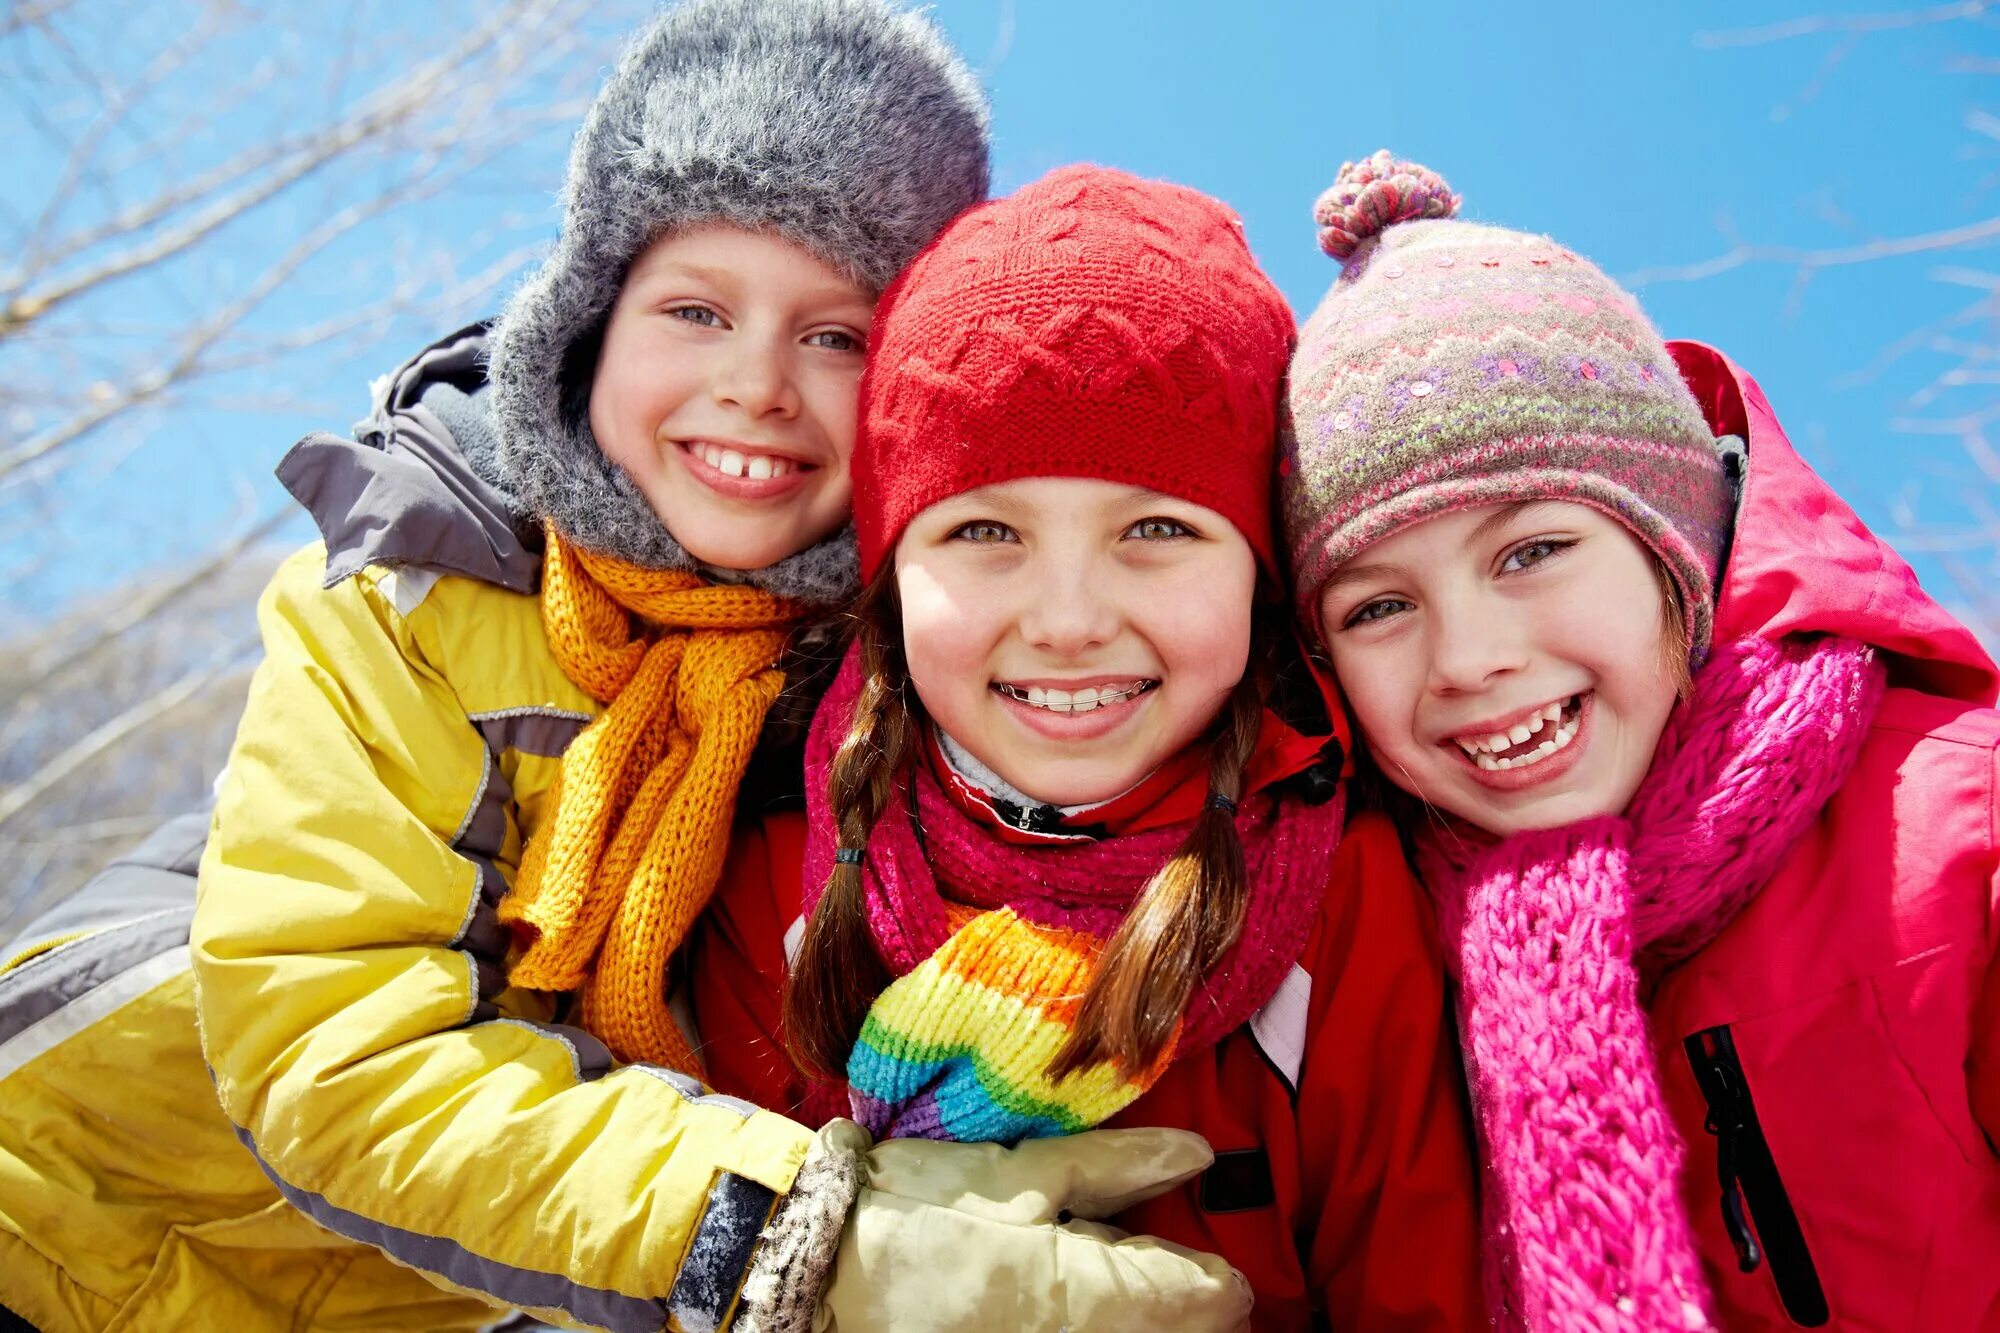 Дети одевались потеплее. Счастливые дети зимой. Зима для детей. Семья зимой. Подростки зимой.